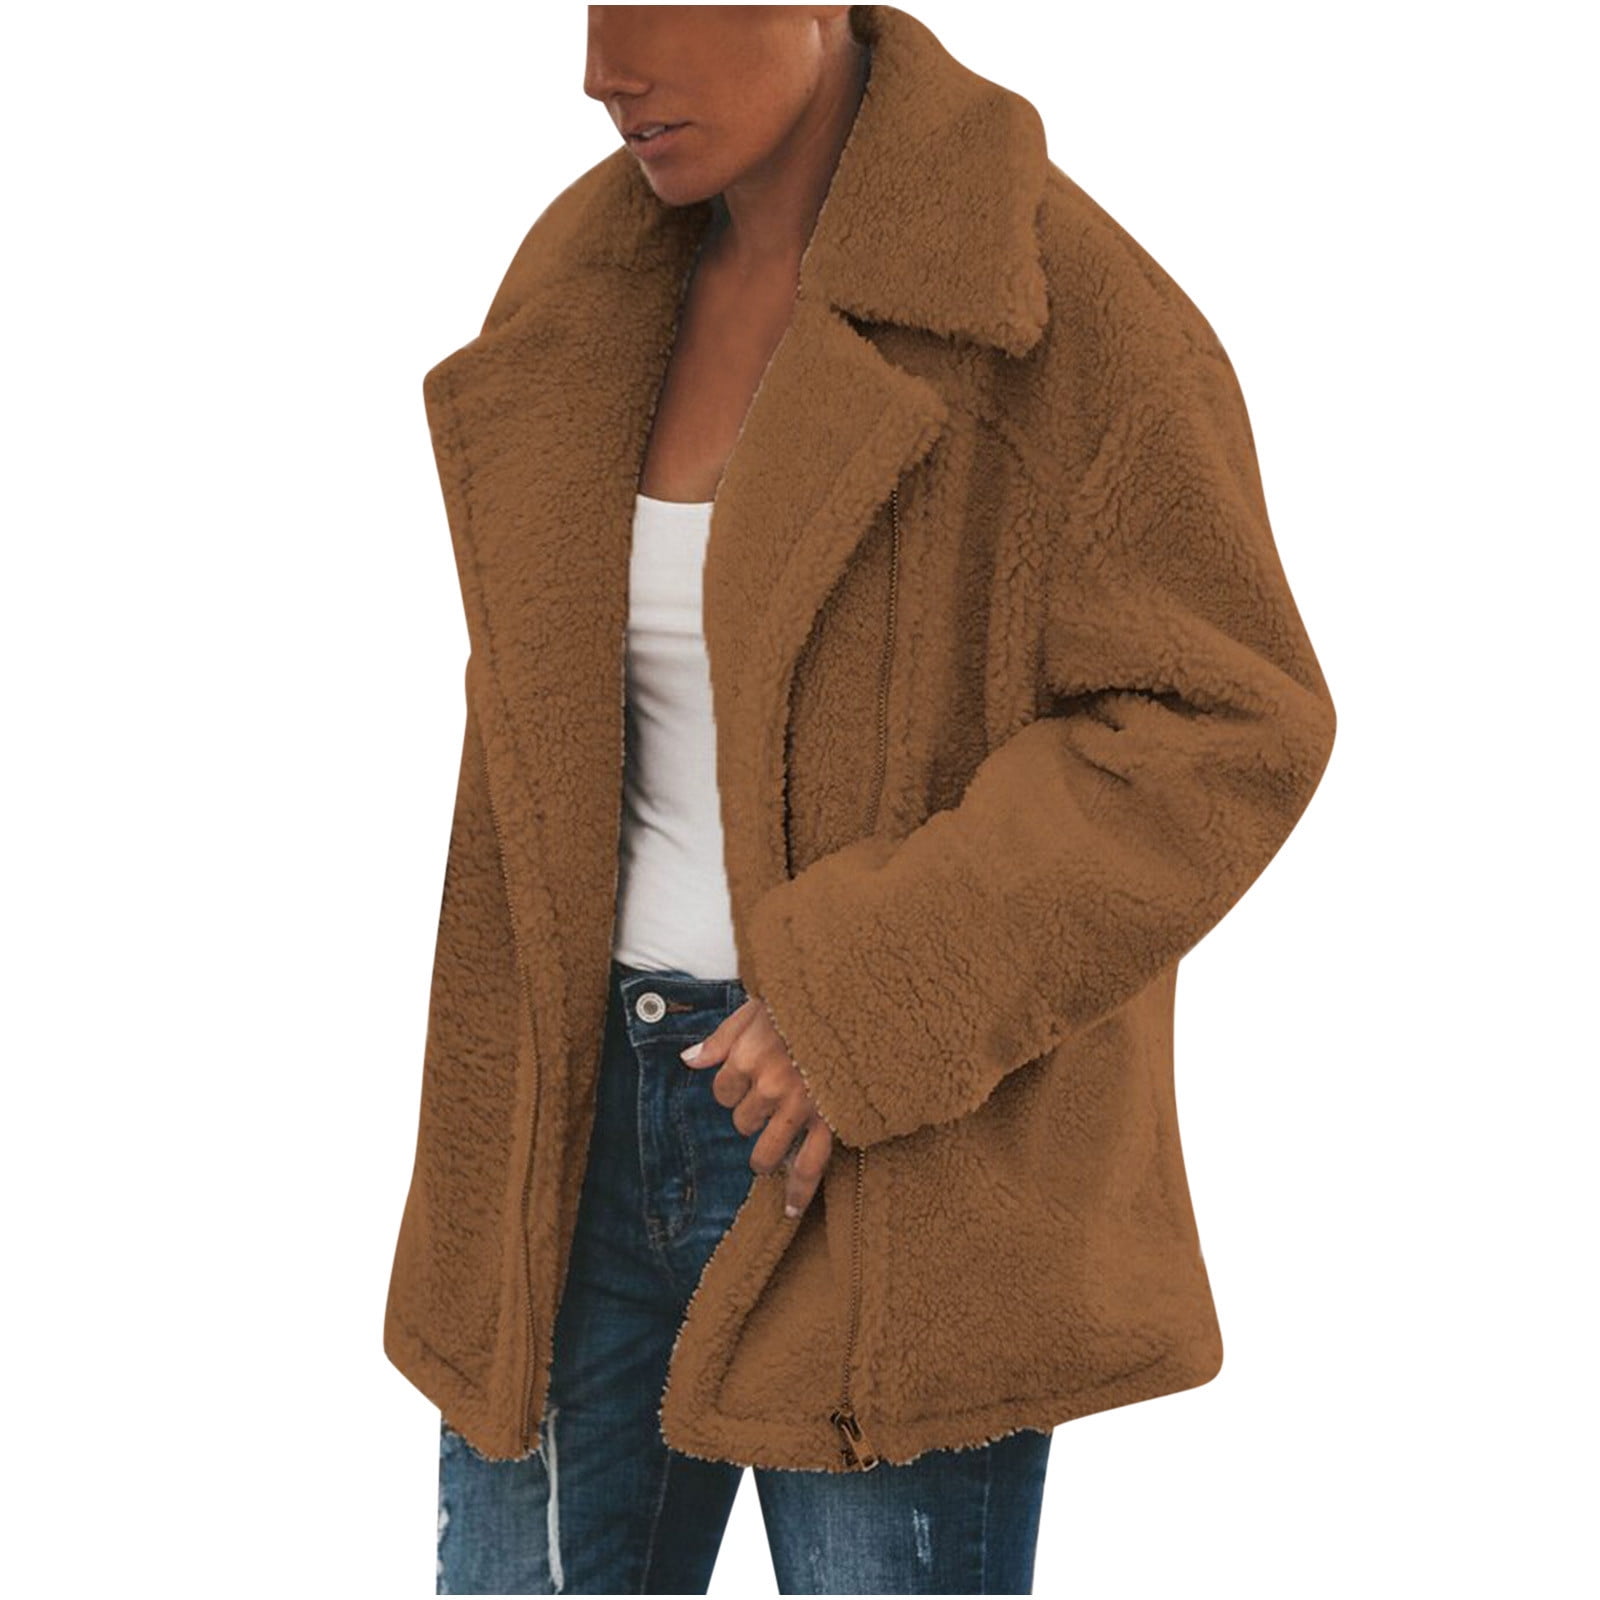 RQYYD Womens Winter Plus Size Sherpa Fleece Jacket Long Sleeve Zip Up Warm  Fuzzy Lapel Coat Loose Shaggy Outwear Tops (Brown,S) 